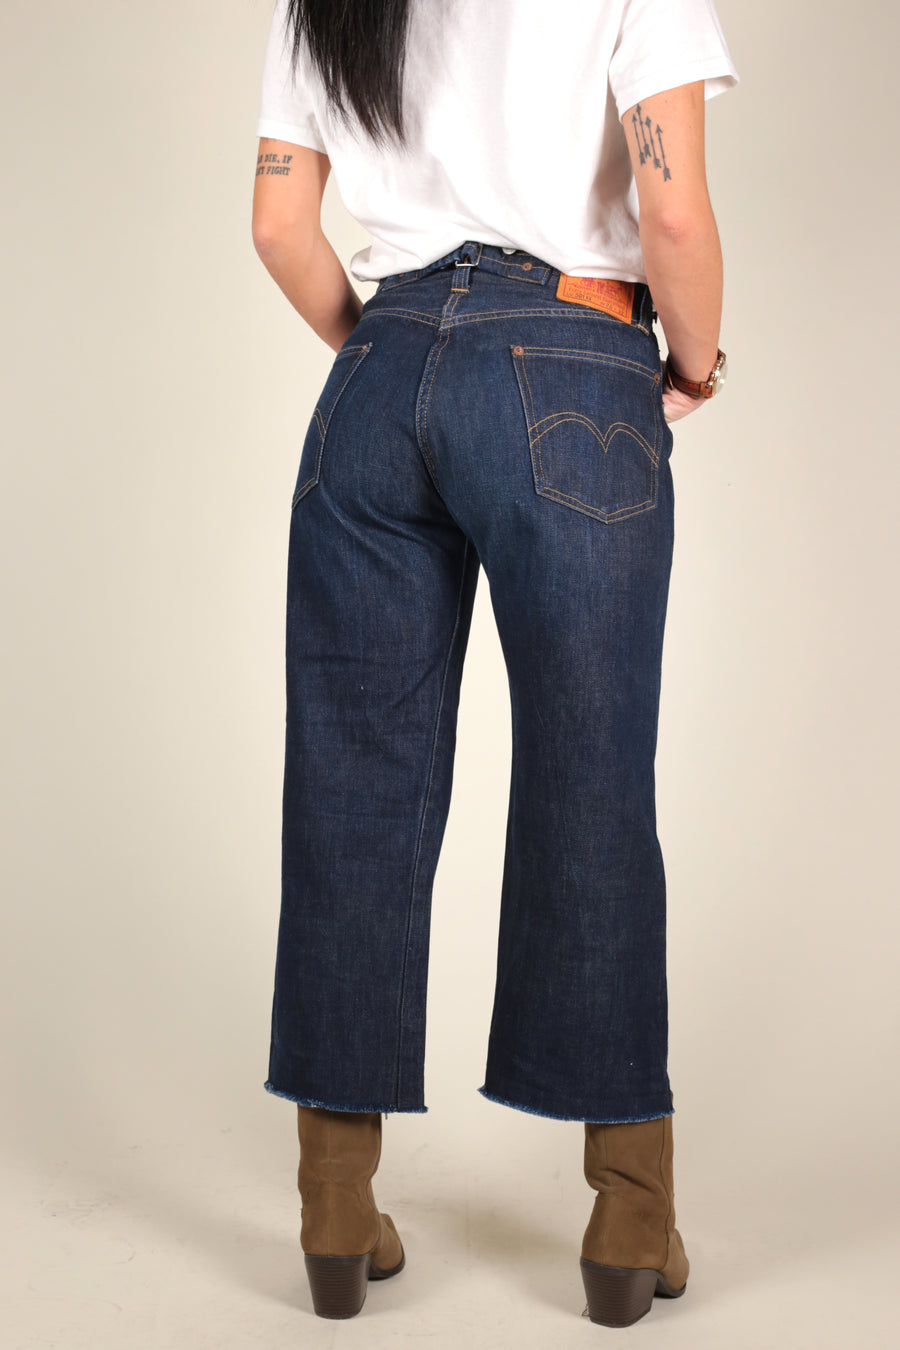 levis jeans 501 XX